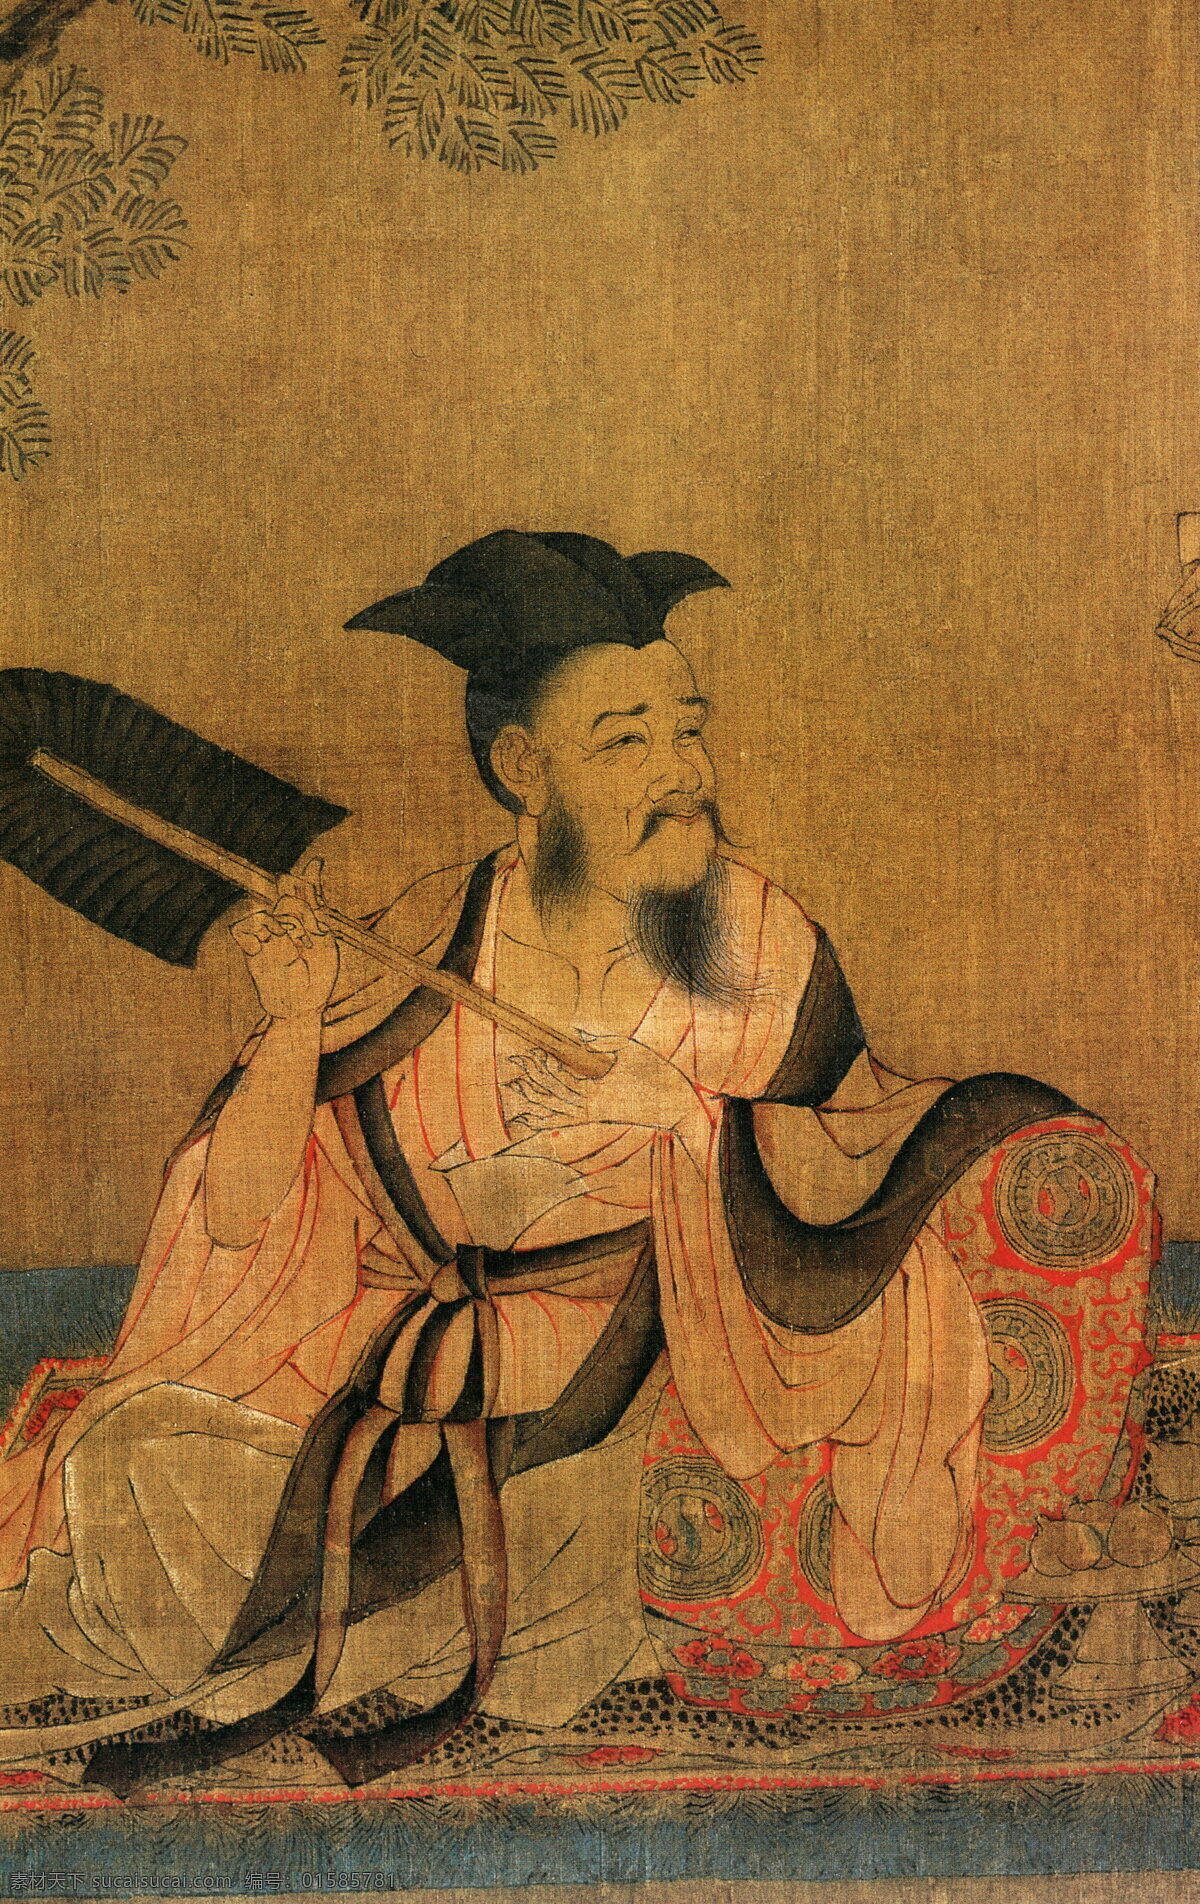 高逸图c 人物画 中国 古画 中国古画 设计素材 人物名画 古典藏画 书画美术 棕色